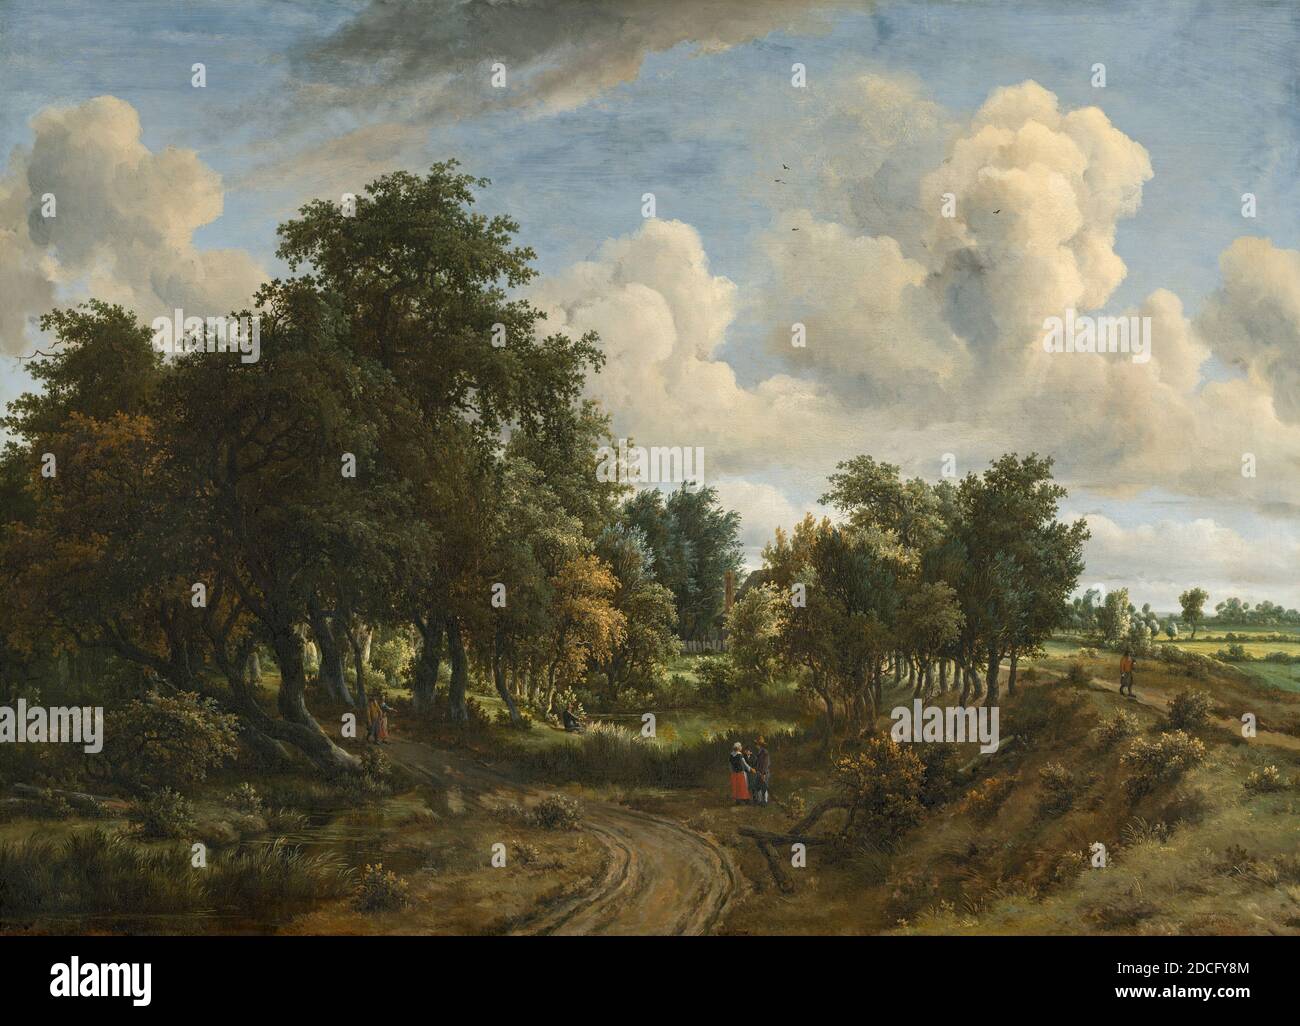 Meindert Hobbema, (artiste), néerlandais, 1638 - 1709, UN paysage boisé, 1663, huile sur toile, total : 94.7 x 130.5 cm (37 5/16 x 51 3/8 po), Meindert Hobbema a étudié sous le nom de l'artiste de paysage Jacob van Ruisdael, et quelques-unes de ses compositions ont évolué de l'œuvre de son maître d'époque. Hobbema s'est approché de la nature de manière directe, représentant des paysages pittoresques et ruraux, enlivenés par la présence de paysans ou de chasseurs. Il réutilise souvent des motifs favoris tels que de vieux moulins à eau, des chalets au toit de chaume et des digues à embobrendre, les réorganisant en de nouvelles compositions Banque D'Images